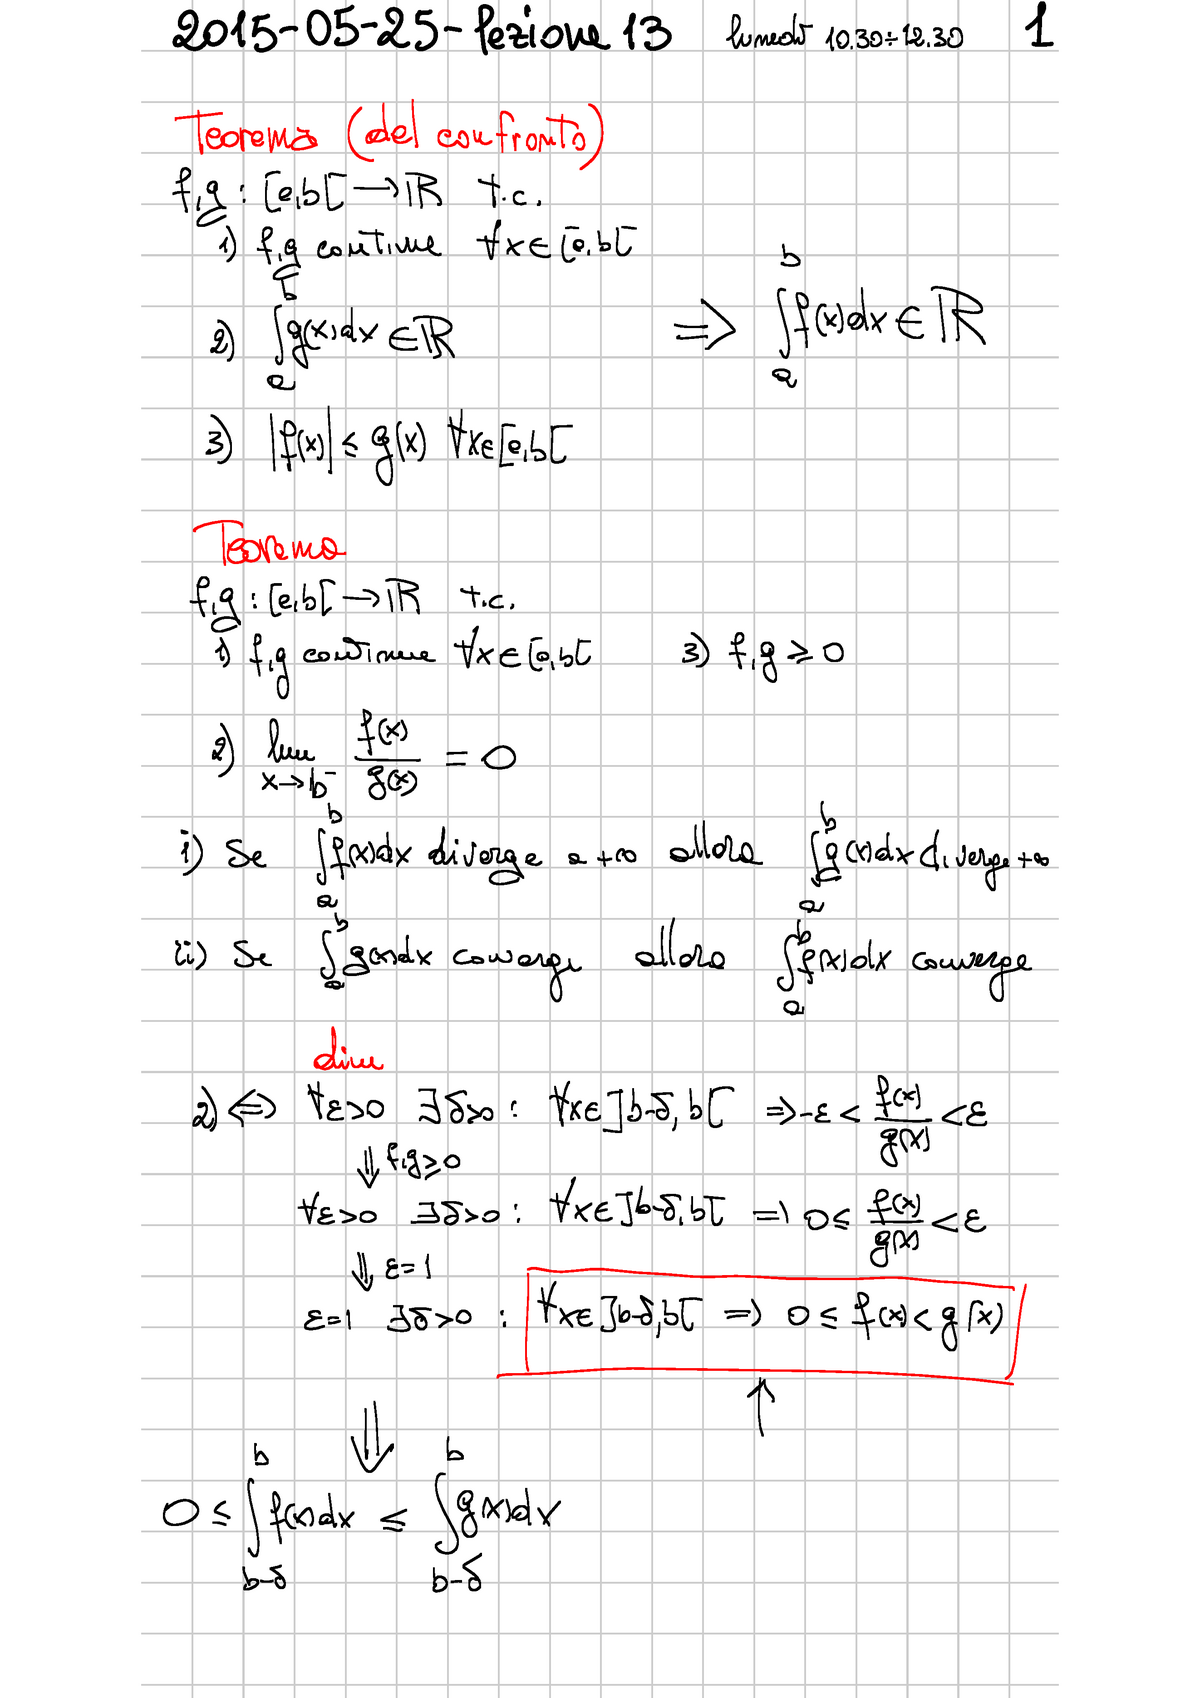 Appunti su integrali impropri - Analisi matematica 1 a.a. 2013/2014 - 121  Calcolo Integrale 30. - Studocu